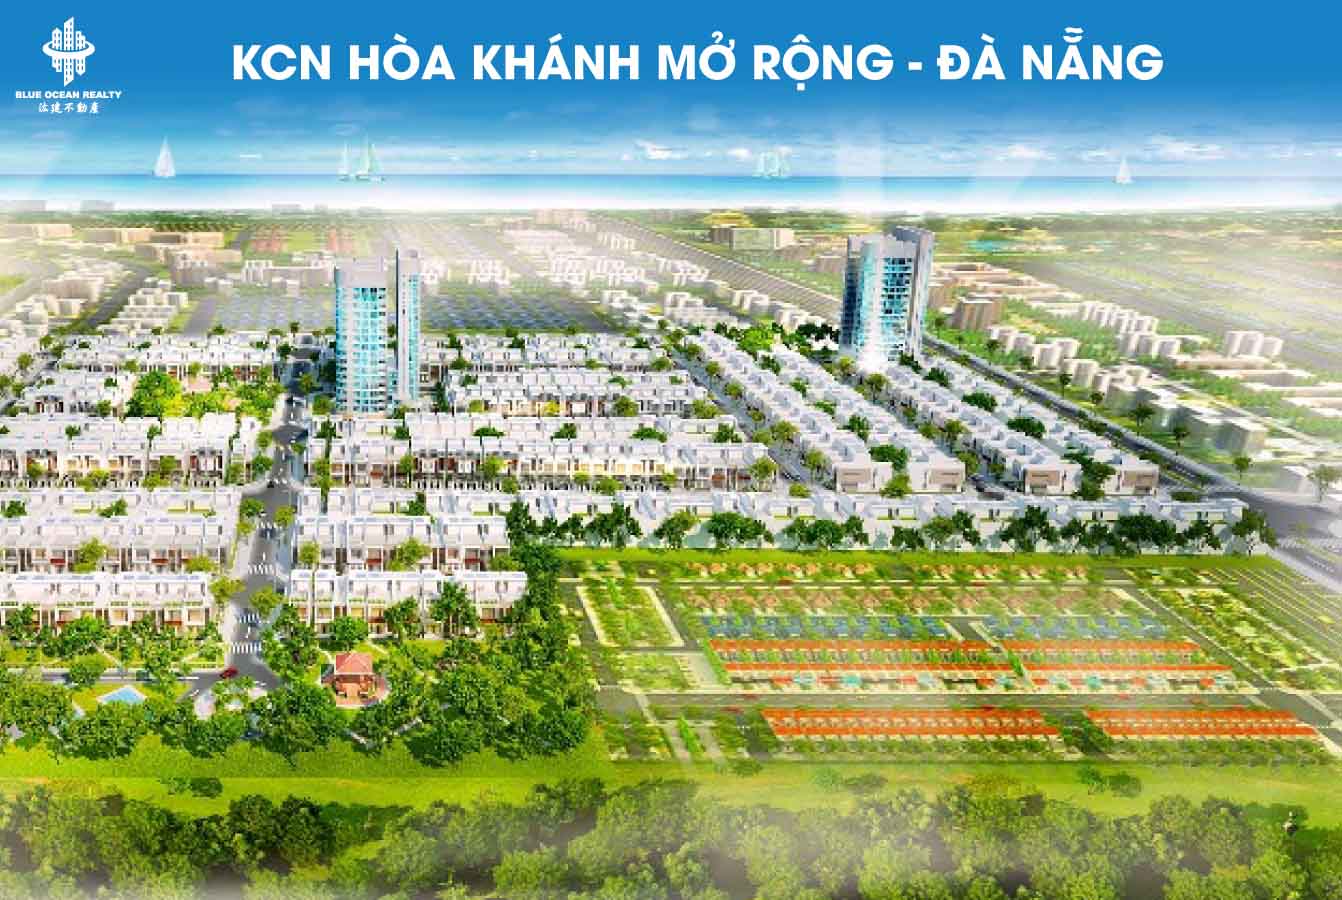 KCN Hòa Khánh mở rộng thành phố Đà Nẵng